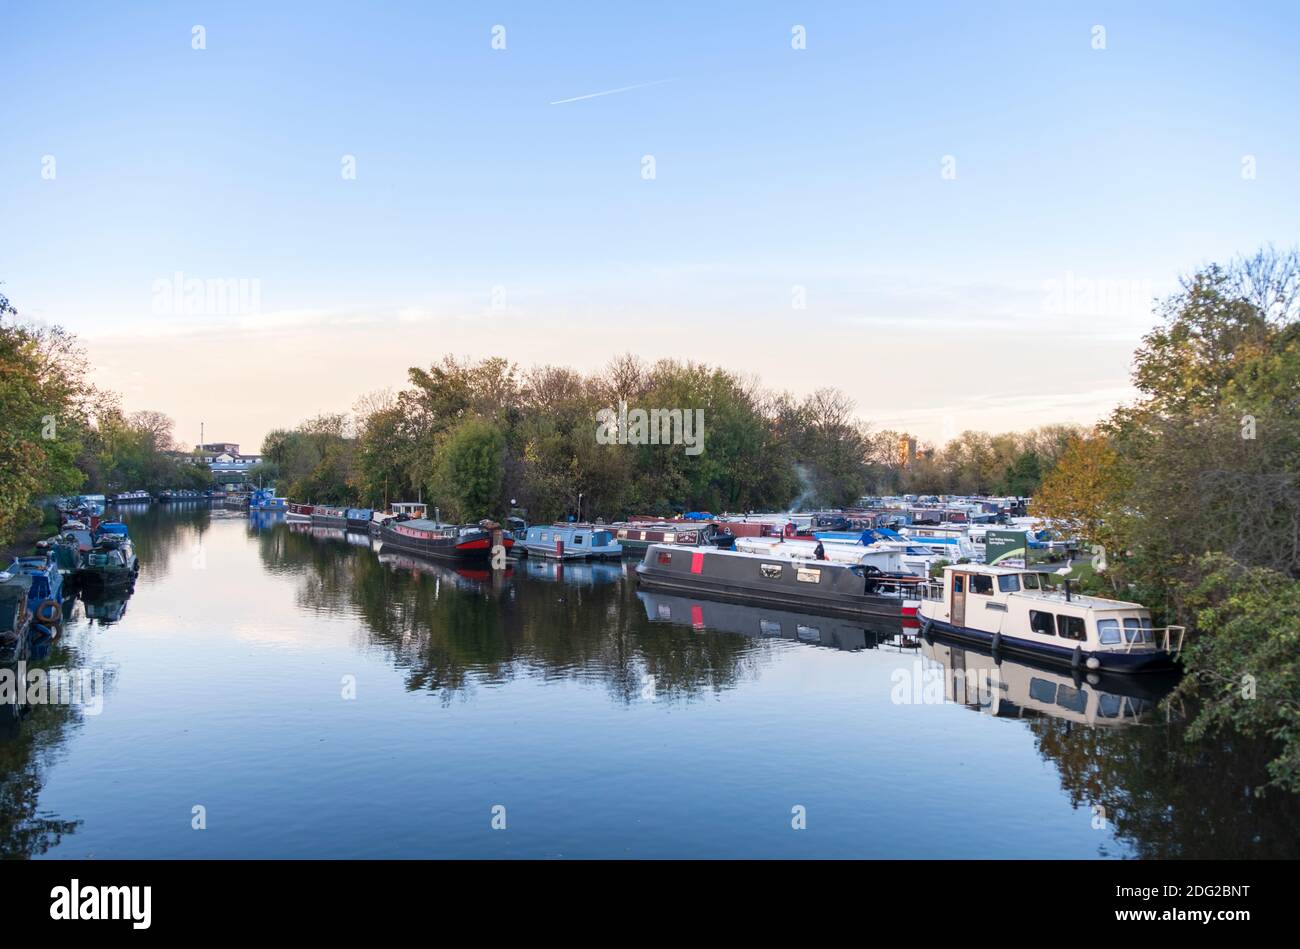 Europa, Regno Unito, Inghilterra, Londra, il fiume Lea (Lee) a Londra est, case galleggianti, riflessione in acqua still, scena tranquilla, vista autunno Foto Stock